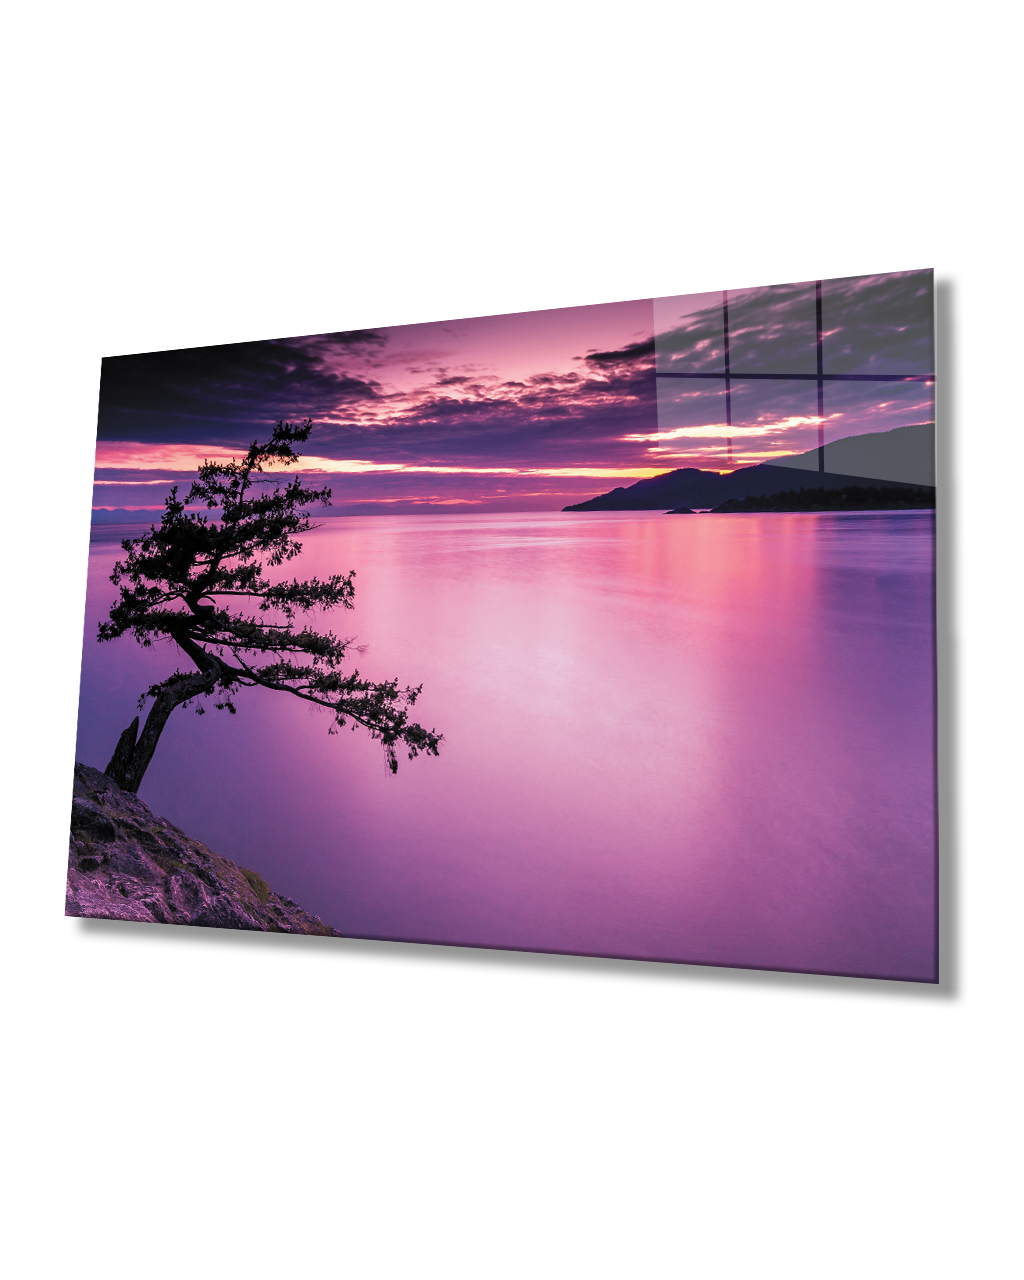 Gün Batımı Ağaç Göl  Cam Tablo  4mm Dayanıklı Temperli Cam Sunset Tree Lake Glass Table 4mm Durable Tempered Glass